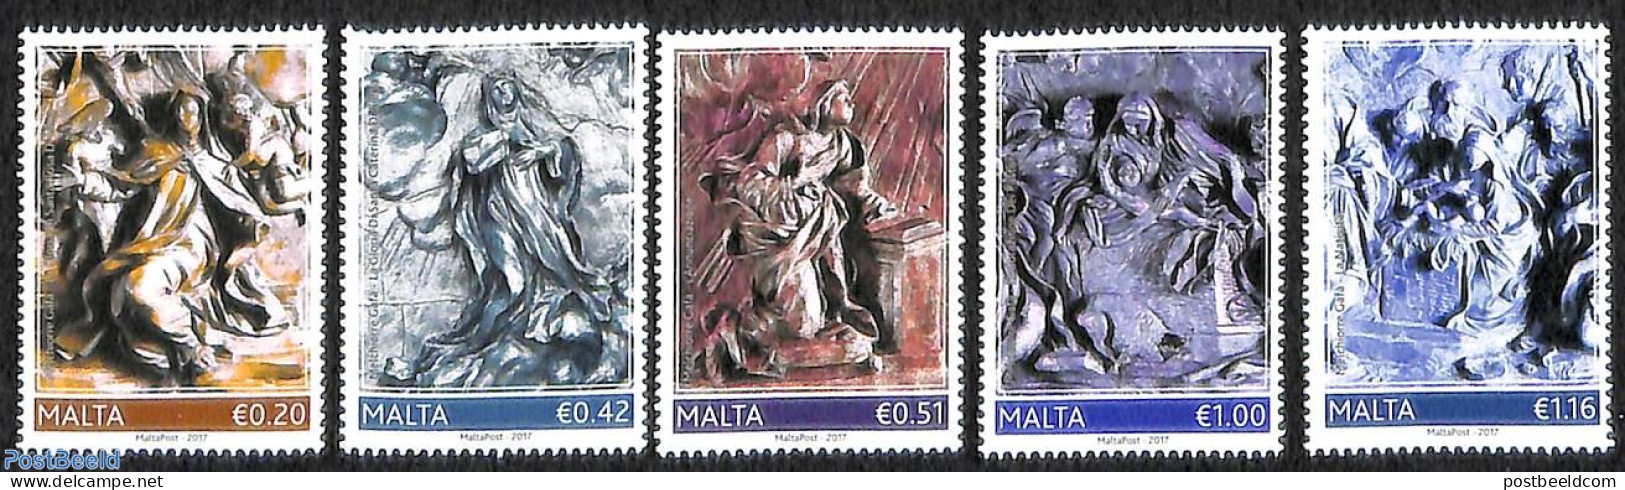 Malta 2017 Melchiorre Gafa 5v, Mint NH - Malta